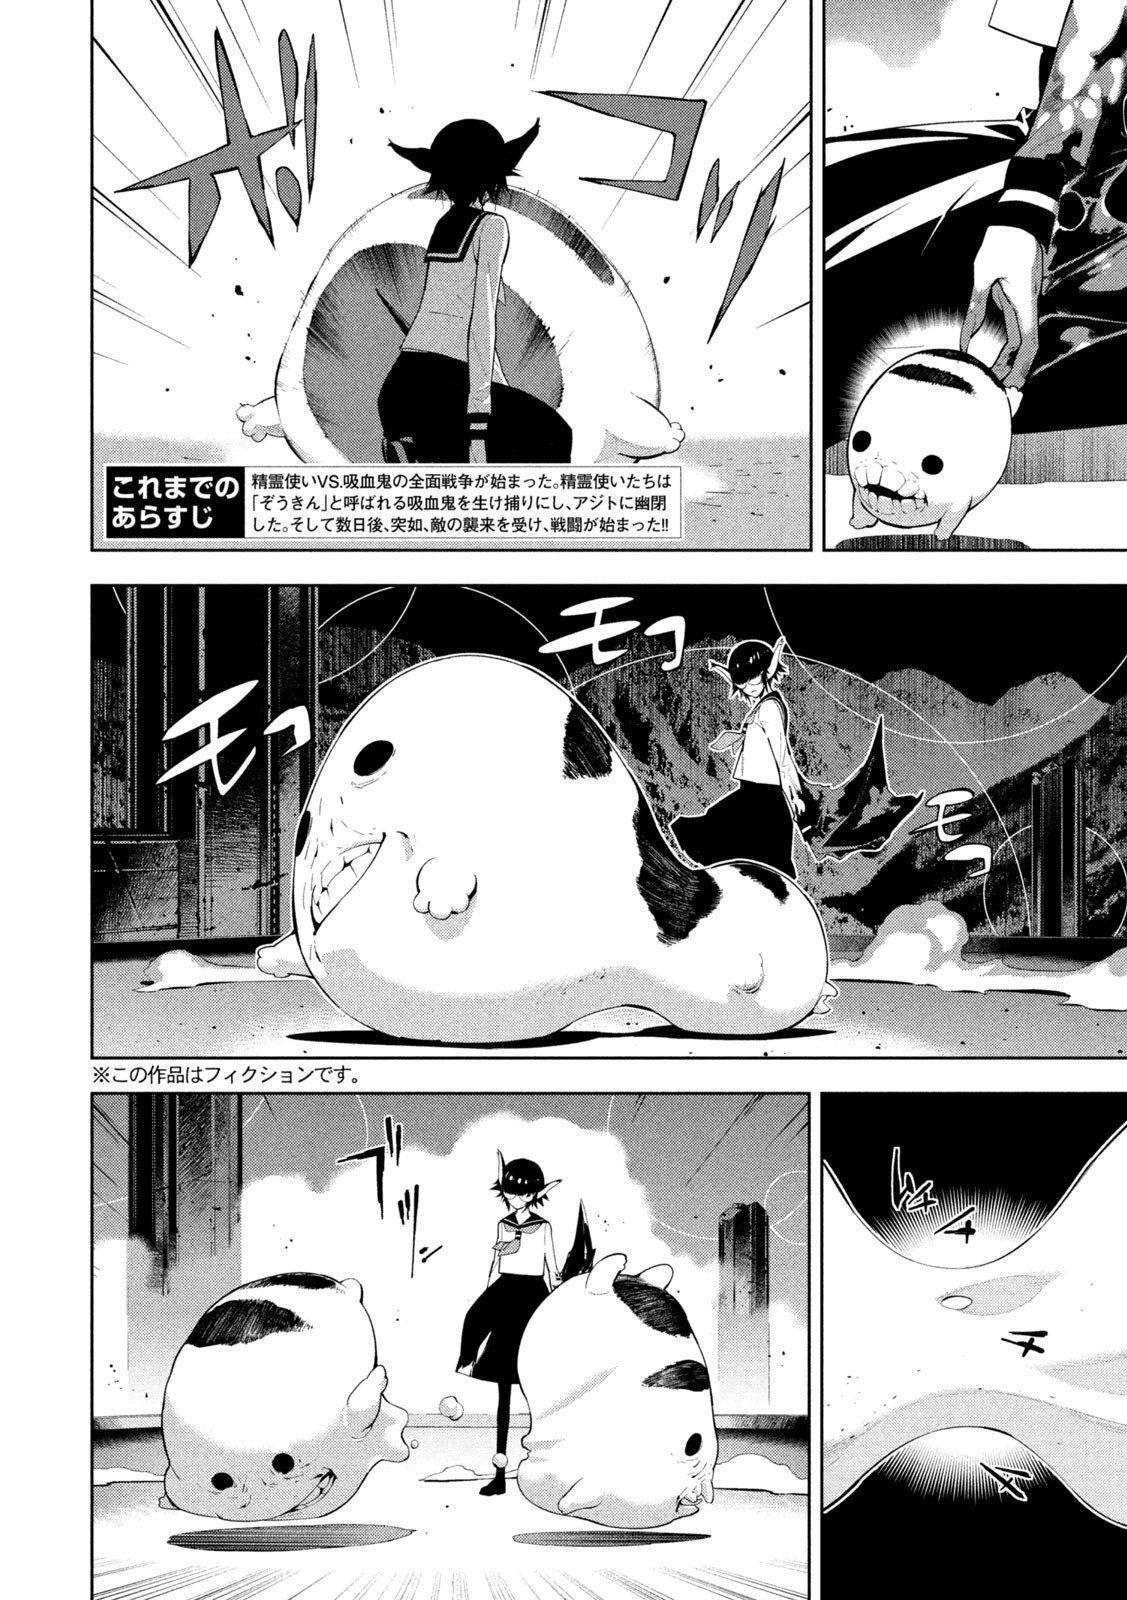 Seirei Tsukai – Chito no Jinshi - Chapter 16 - Page 2